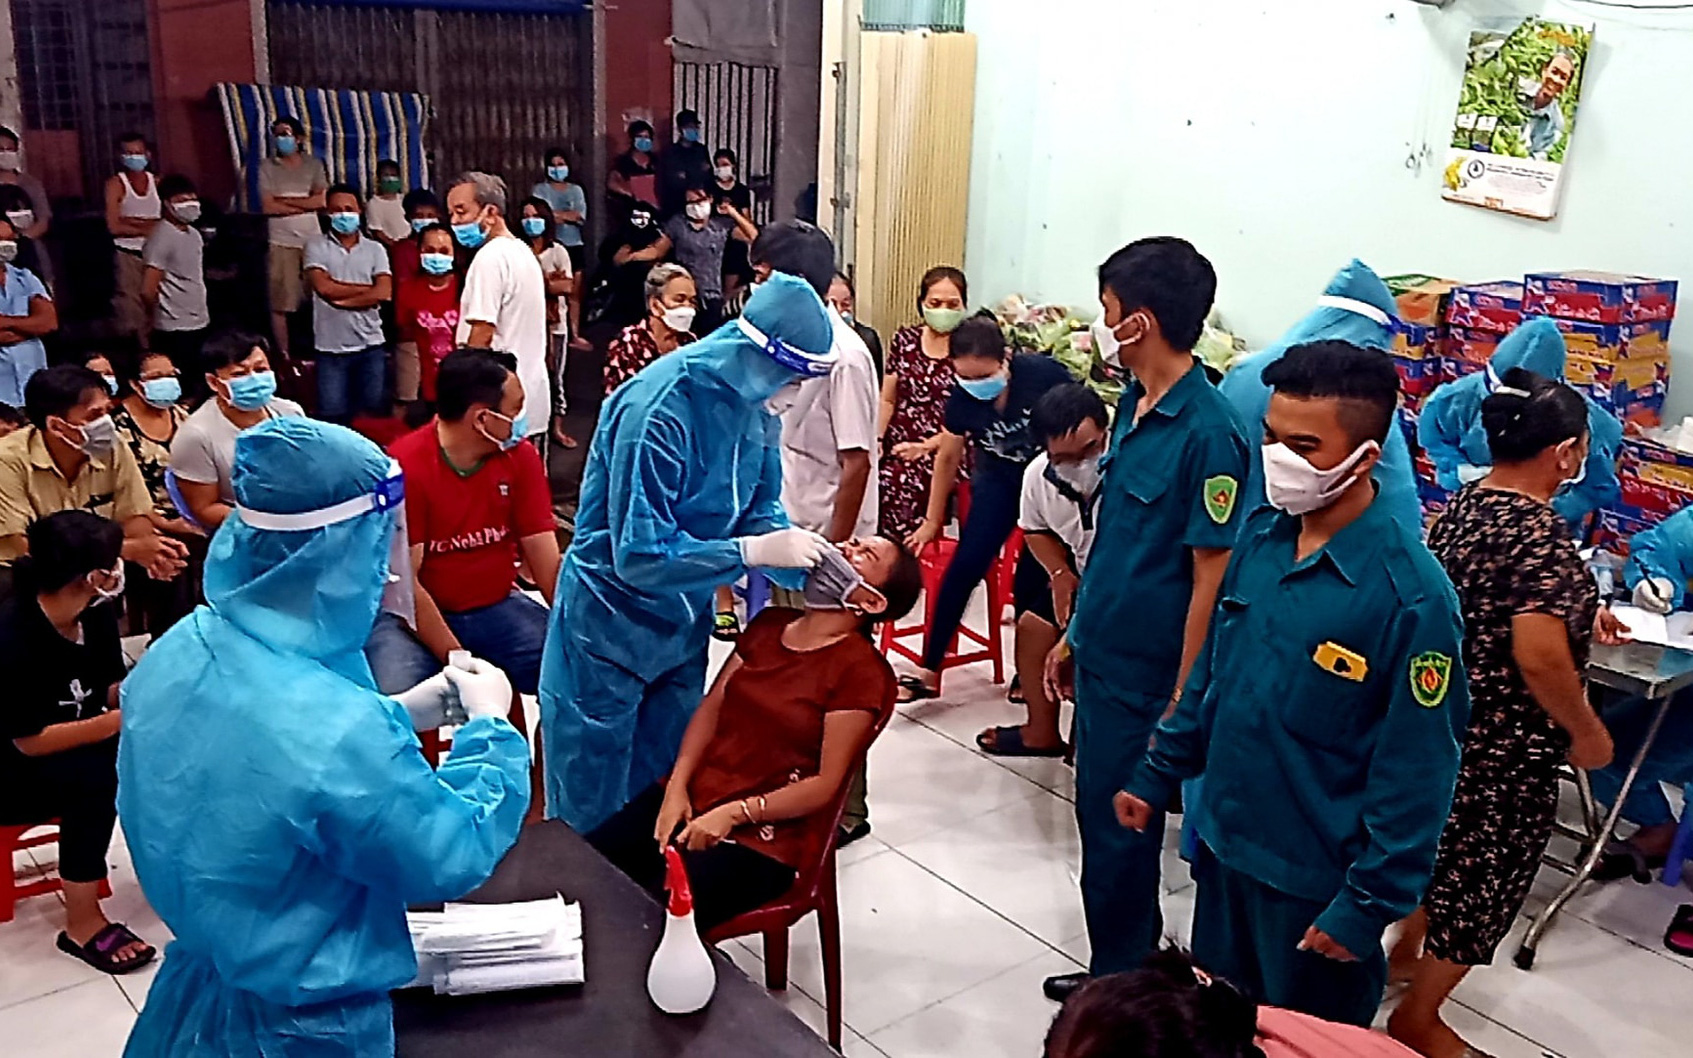 KHẨN: Bình Dương tìm người ở 2 địa điểm liên quan trường hợp nhiễm COVID-19 ngoài cộng đồng đầu tiên ở Bàu Bàng